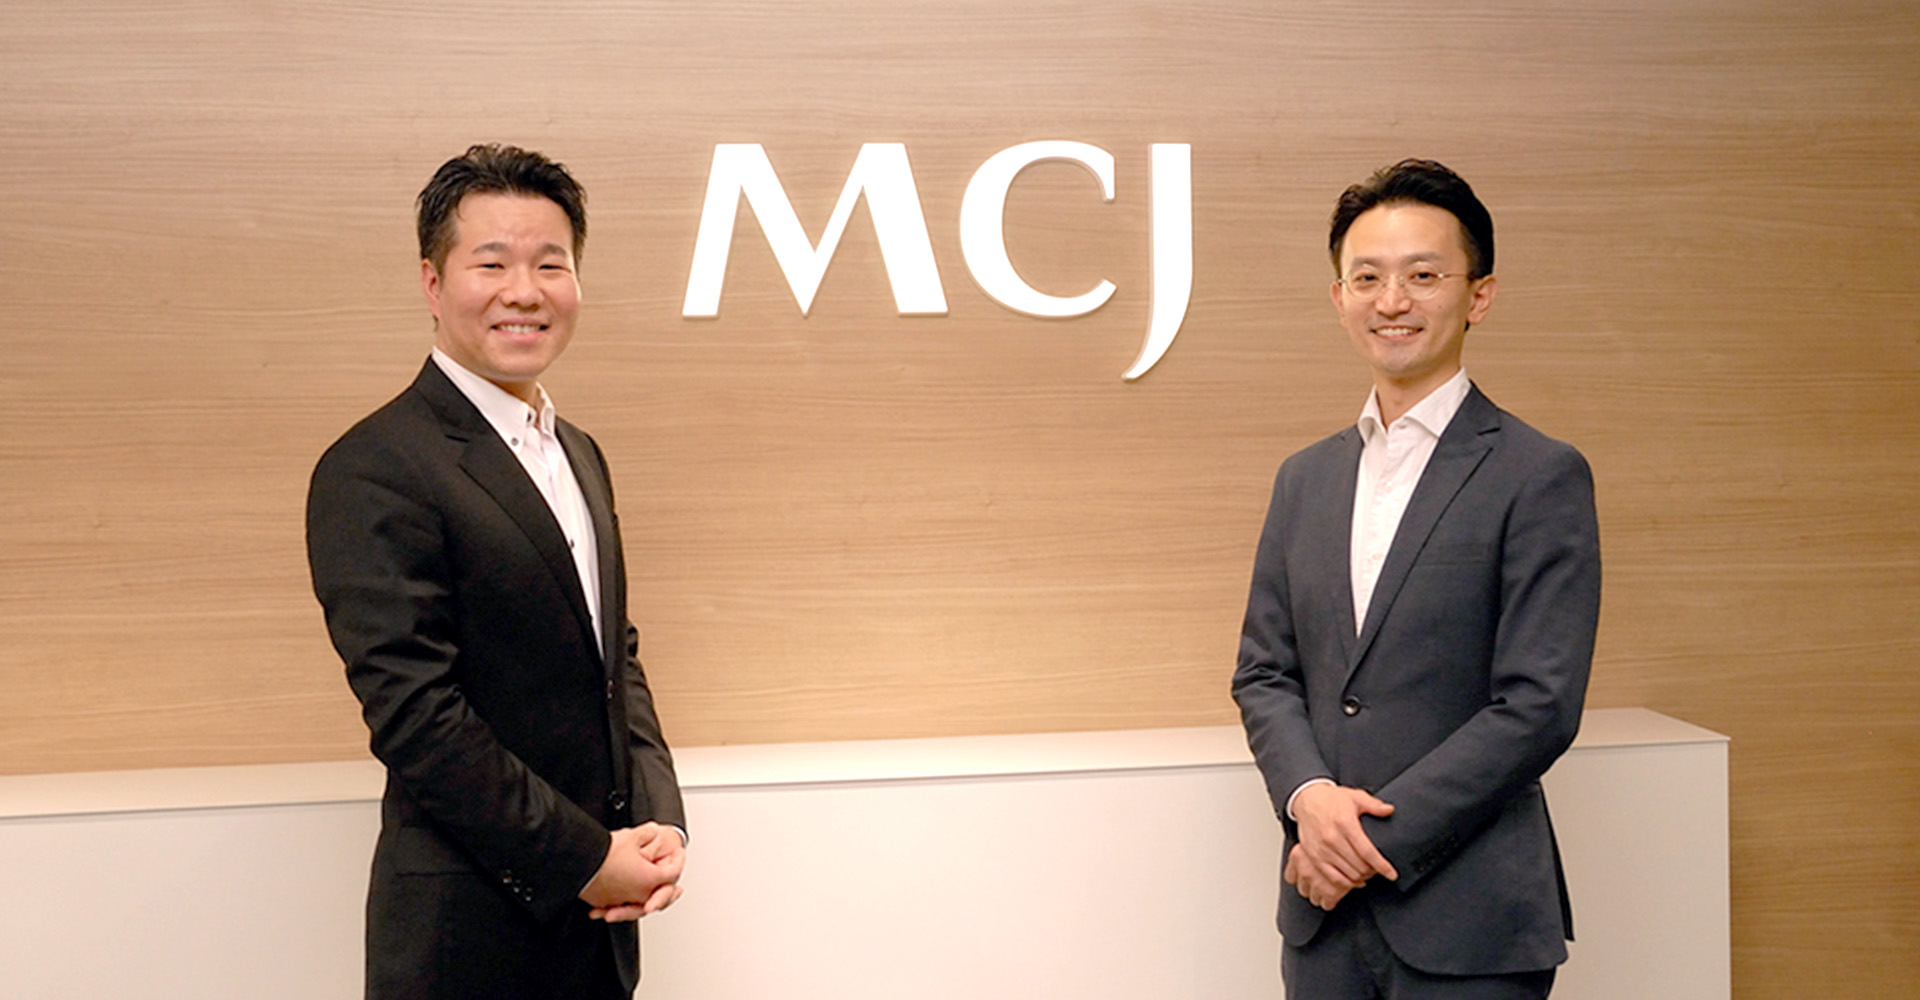 株式会社MCJのロゴの前で笑顔の代表取締役 安井氏と聞き手、野村アセットマネジメント株式会社 馮